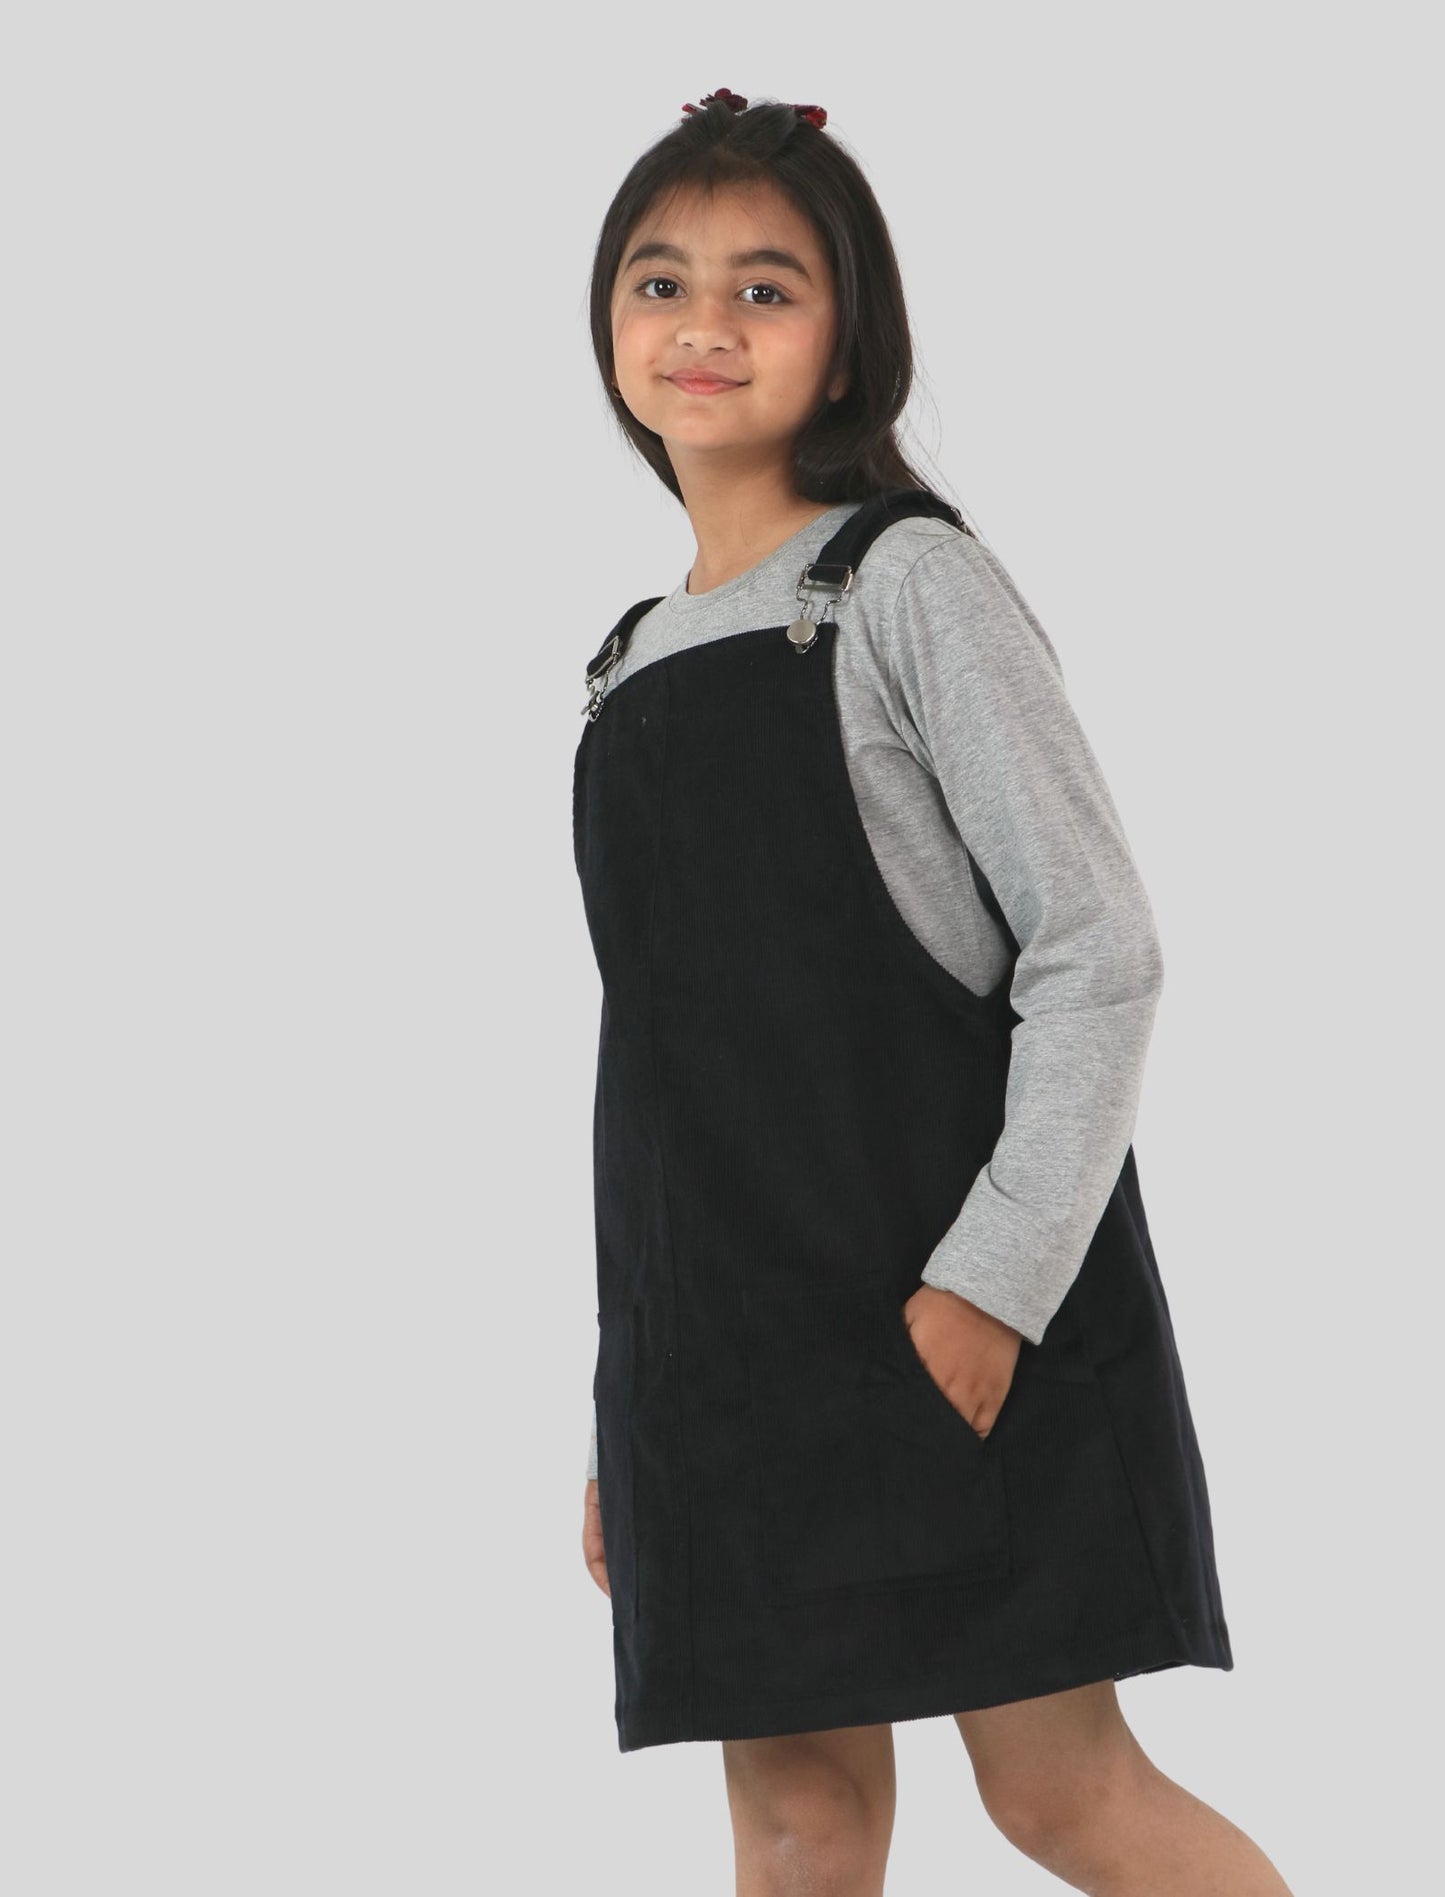 Girls Kids Corduroy Pinafore Dress (Black)